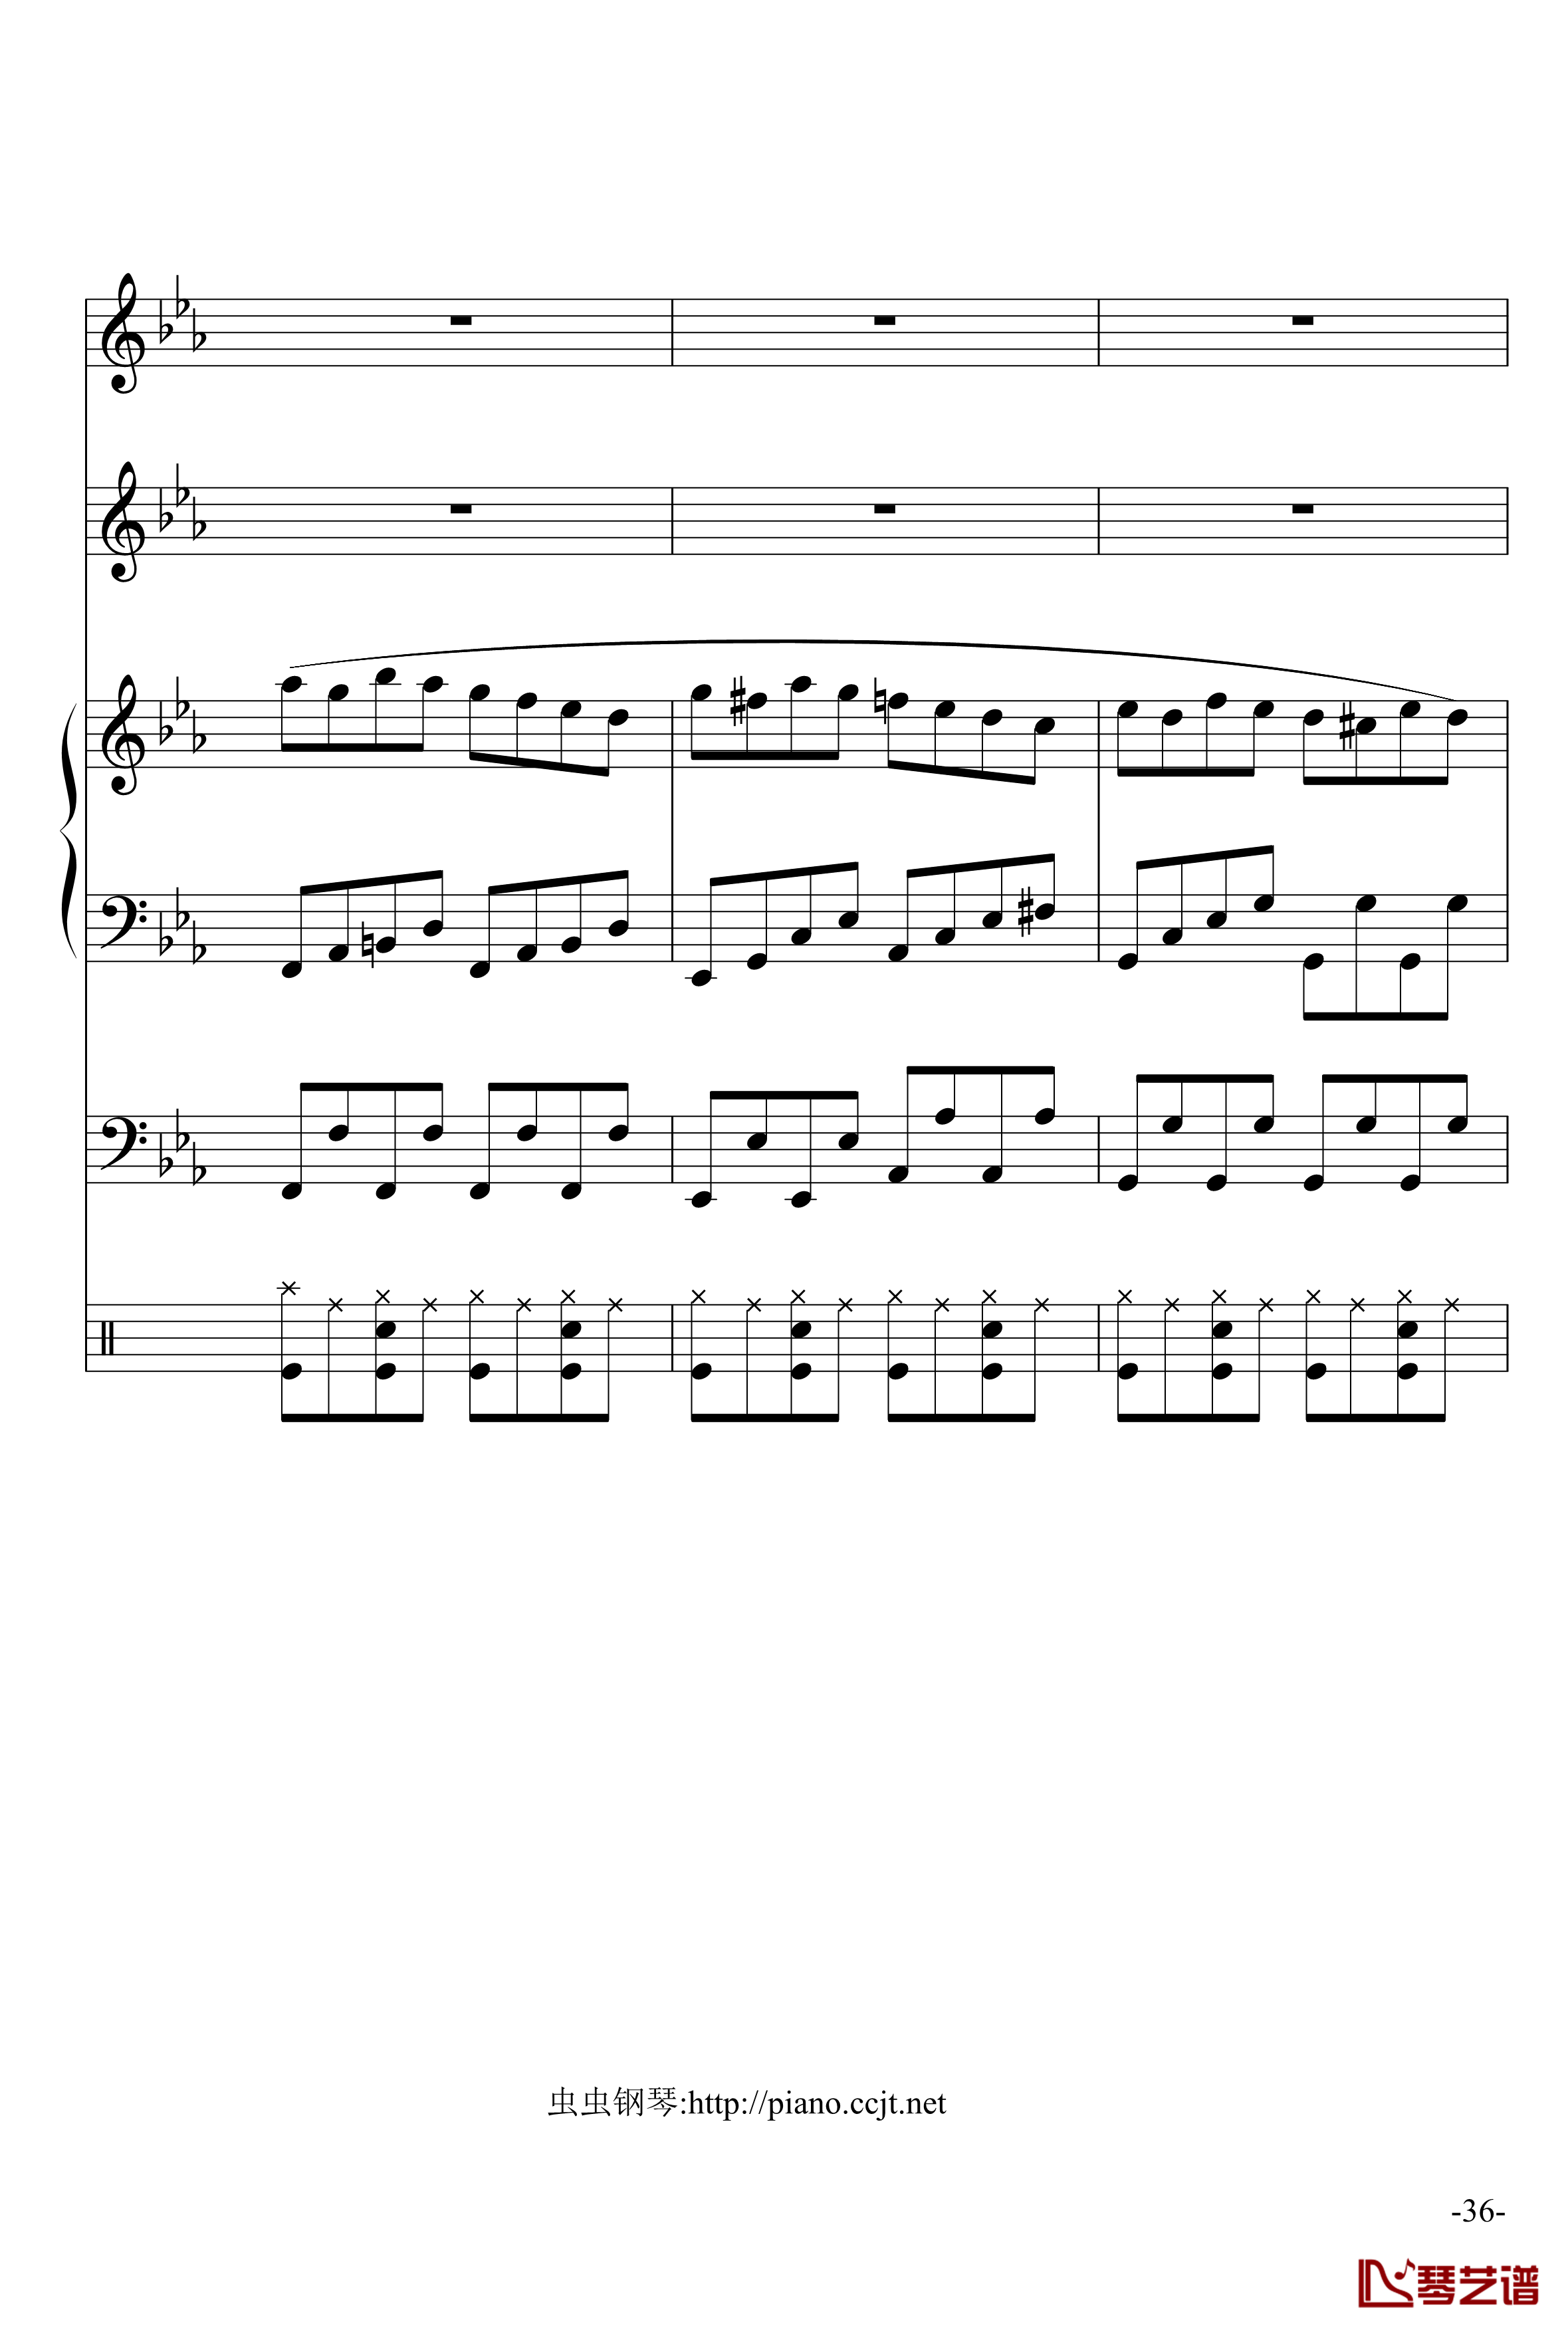 悲怆奏鸣曲钢琴谱-加小乐队-贝多芬-beethoven36